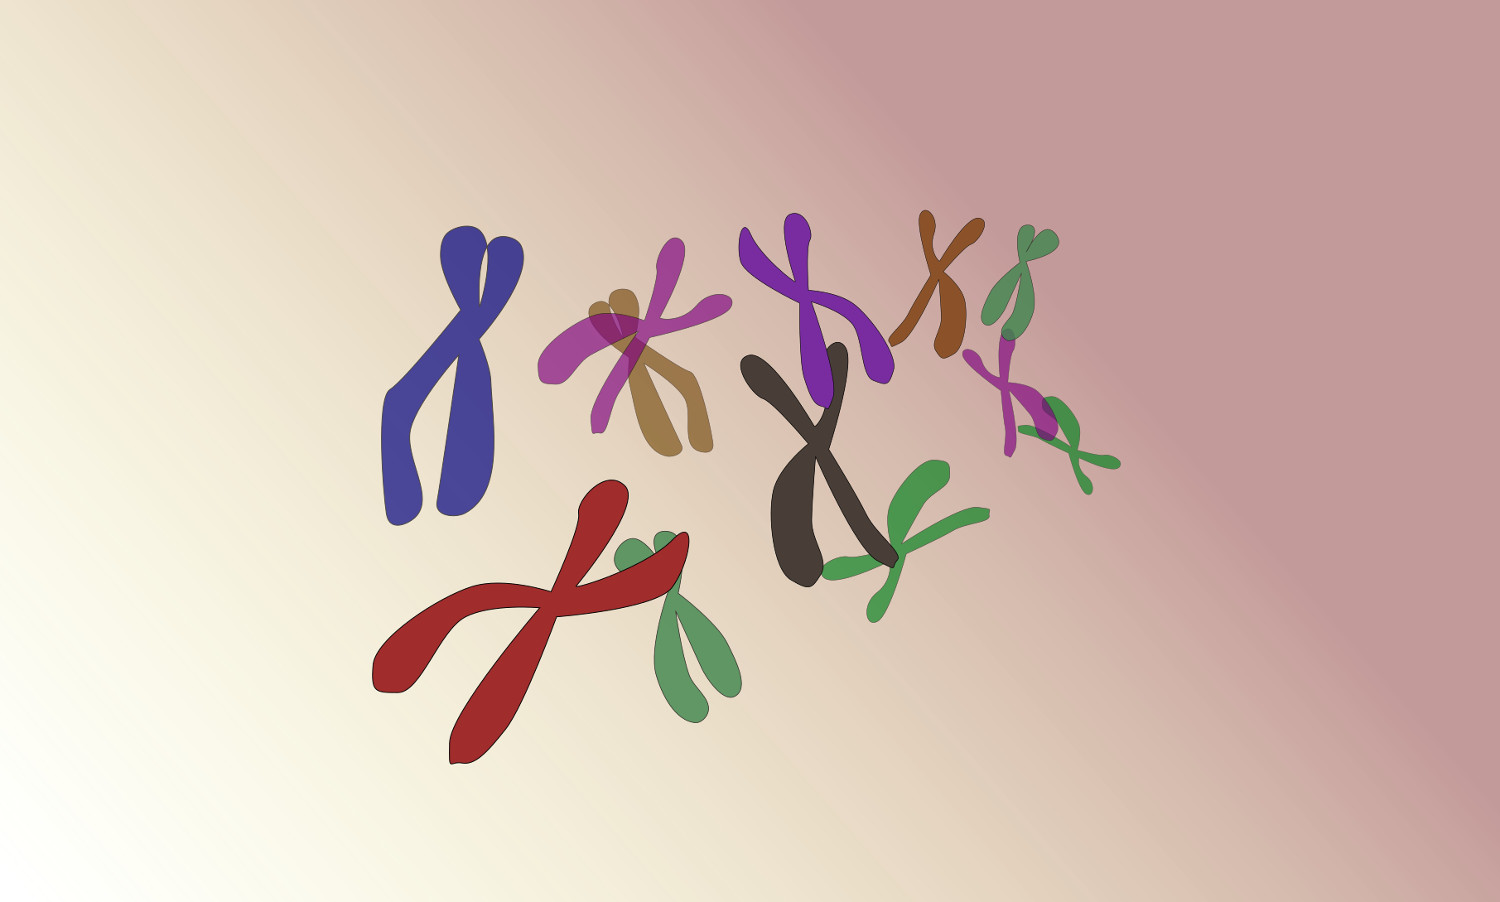 Estudio de variabilidad genética en el cromosoma X